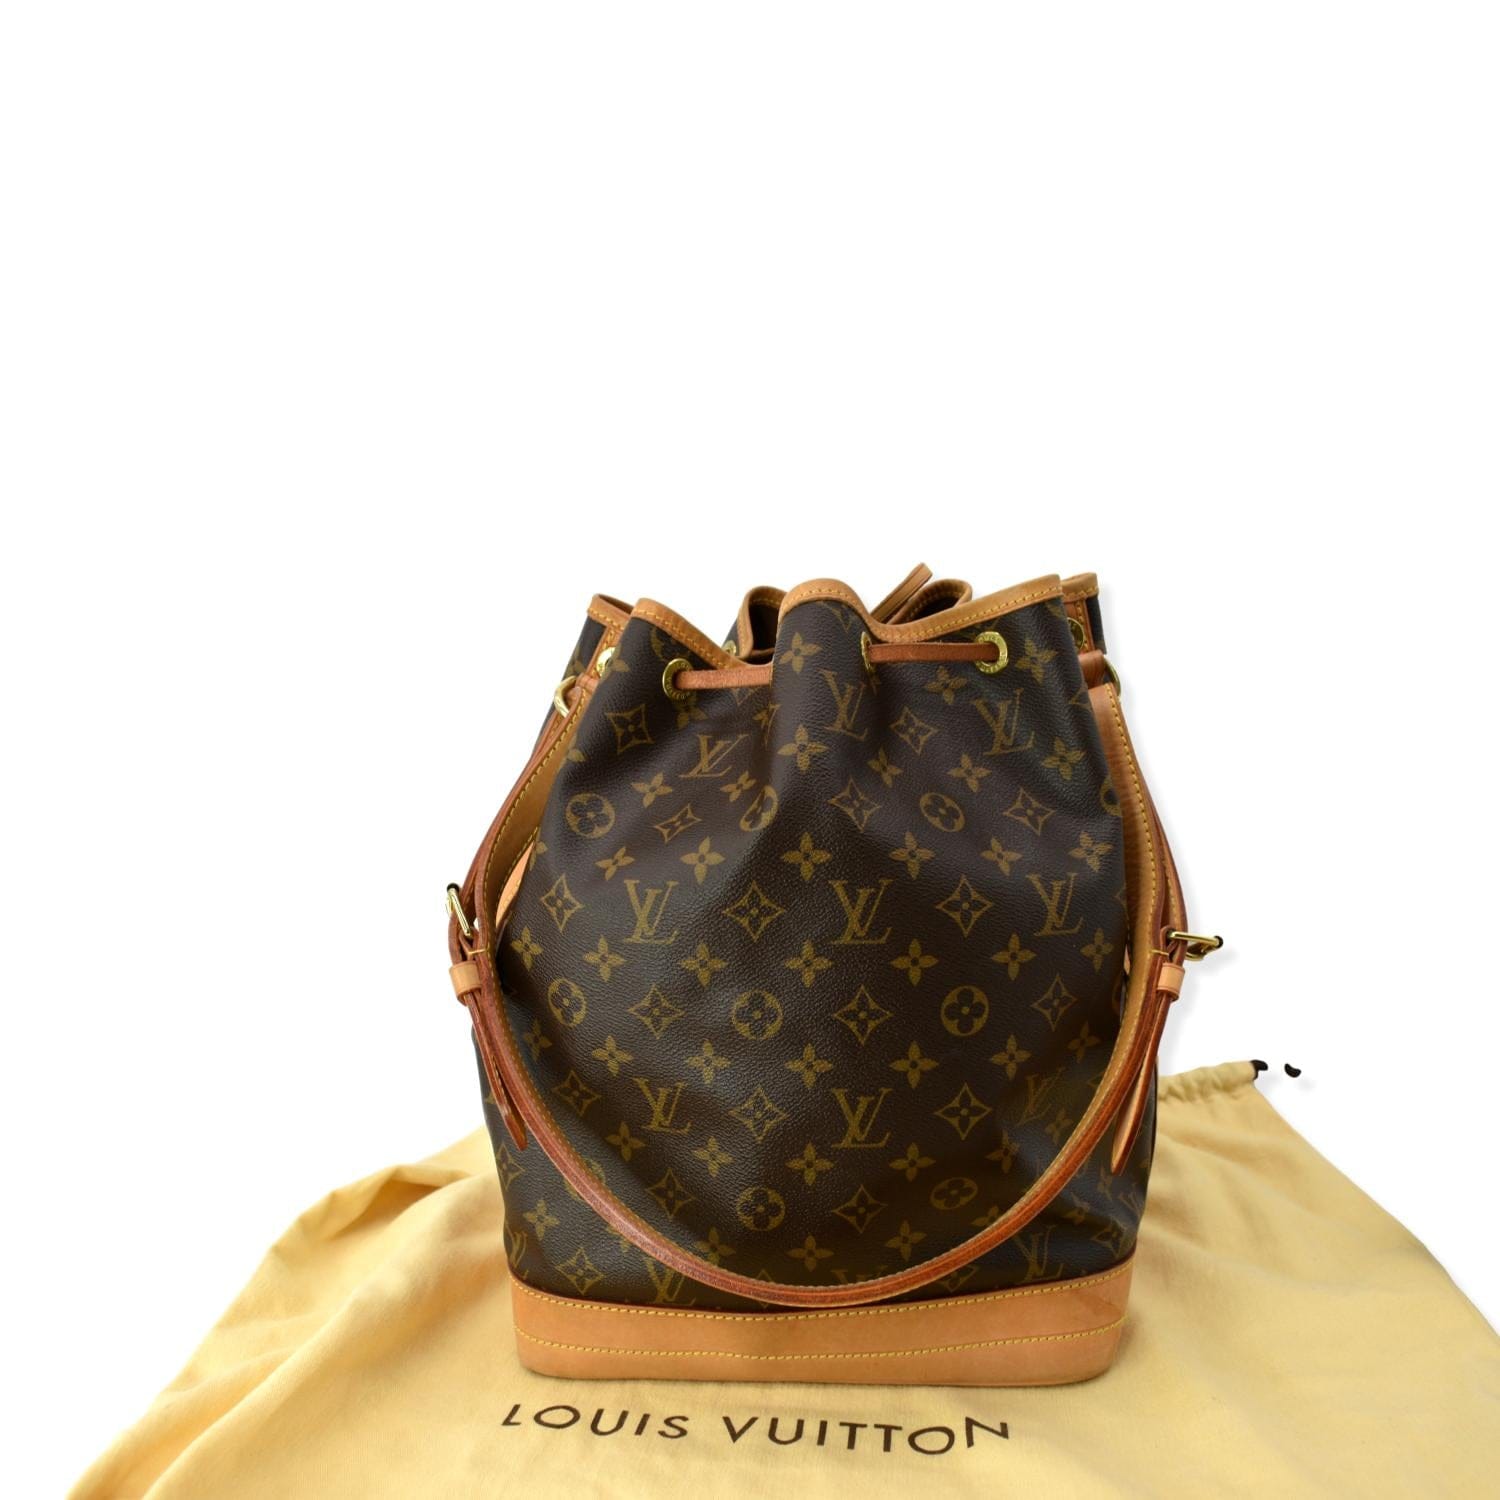 Louis Vuitton Large Noe Monogram Canvas Tote Bag